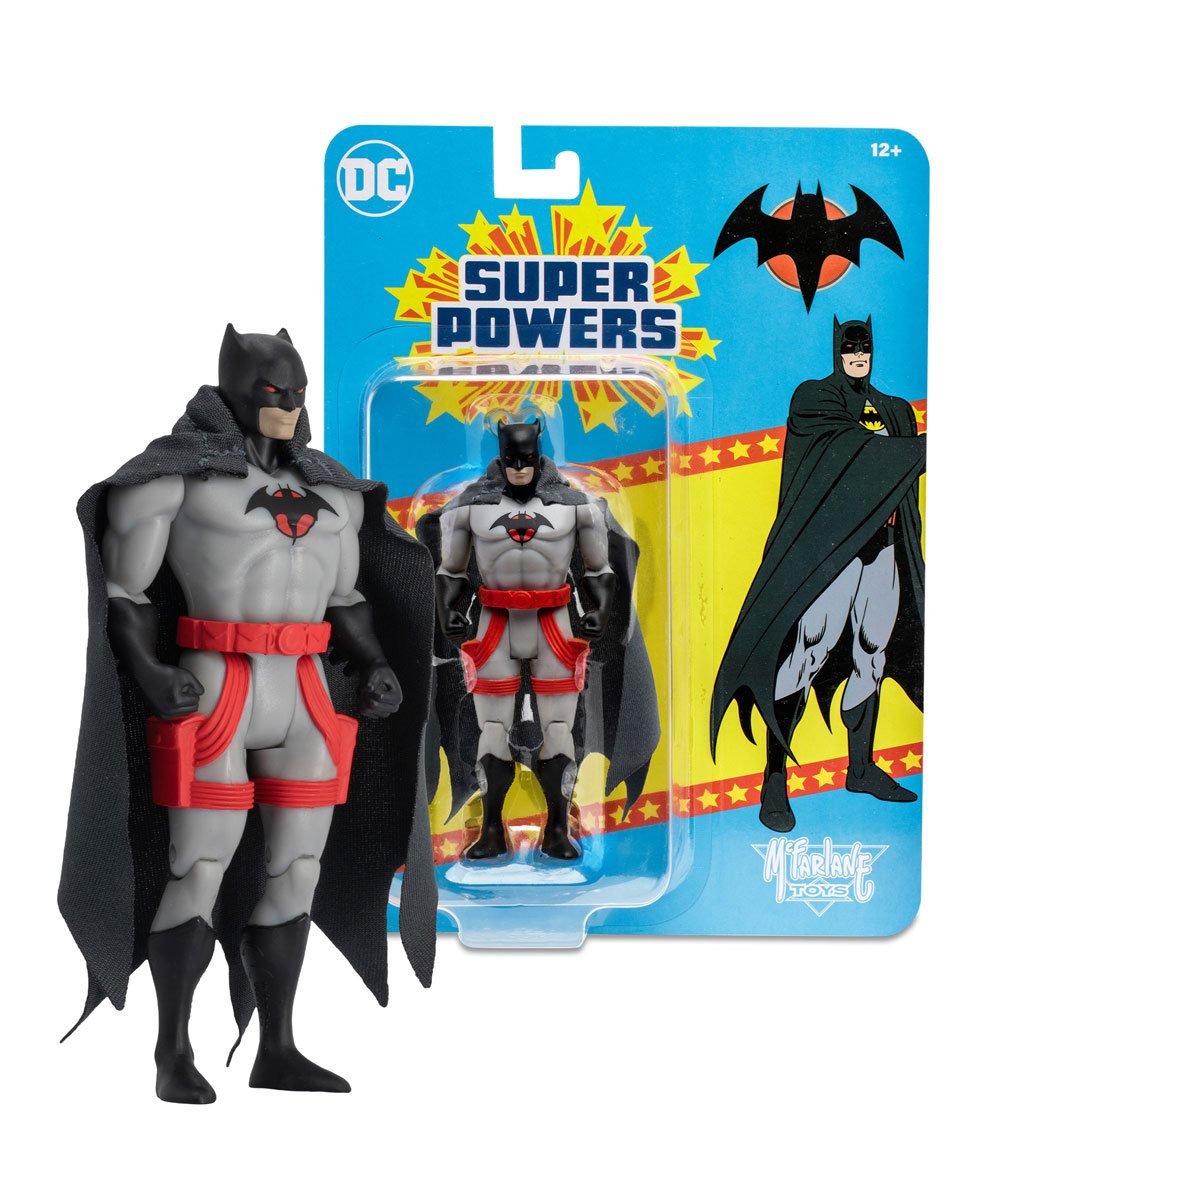 MCFARLANE DC Super Powers Wave 5 Thomas Wayne Batman Flashpoint 4-Inch Scale Action Figure